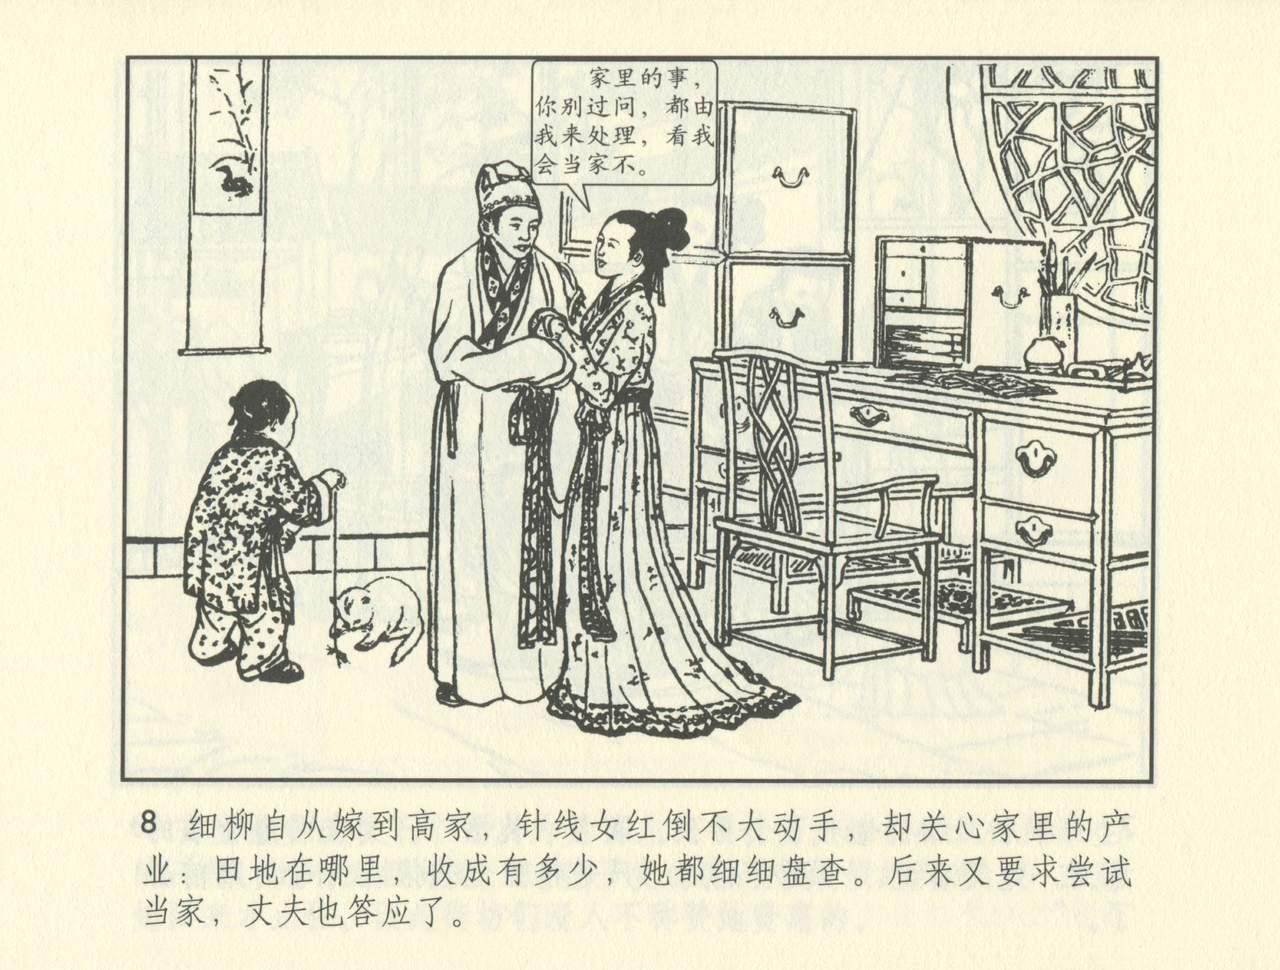 聊斋志异 张玮等绘 天津人民美术出版社 卷二十一 ~ 三十 480